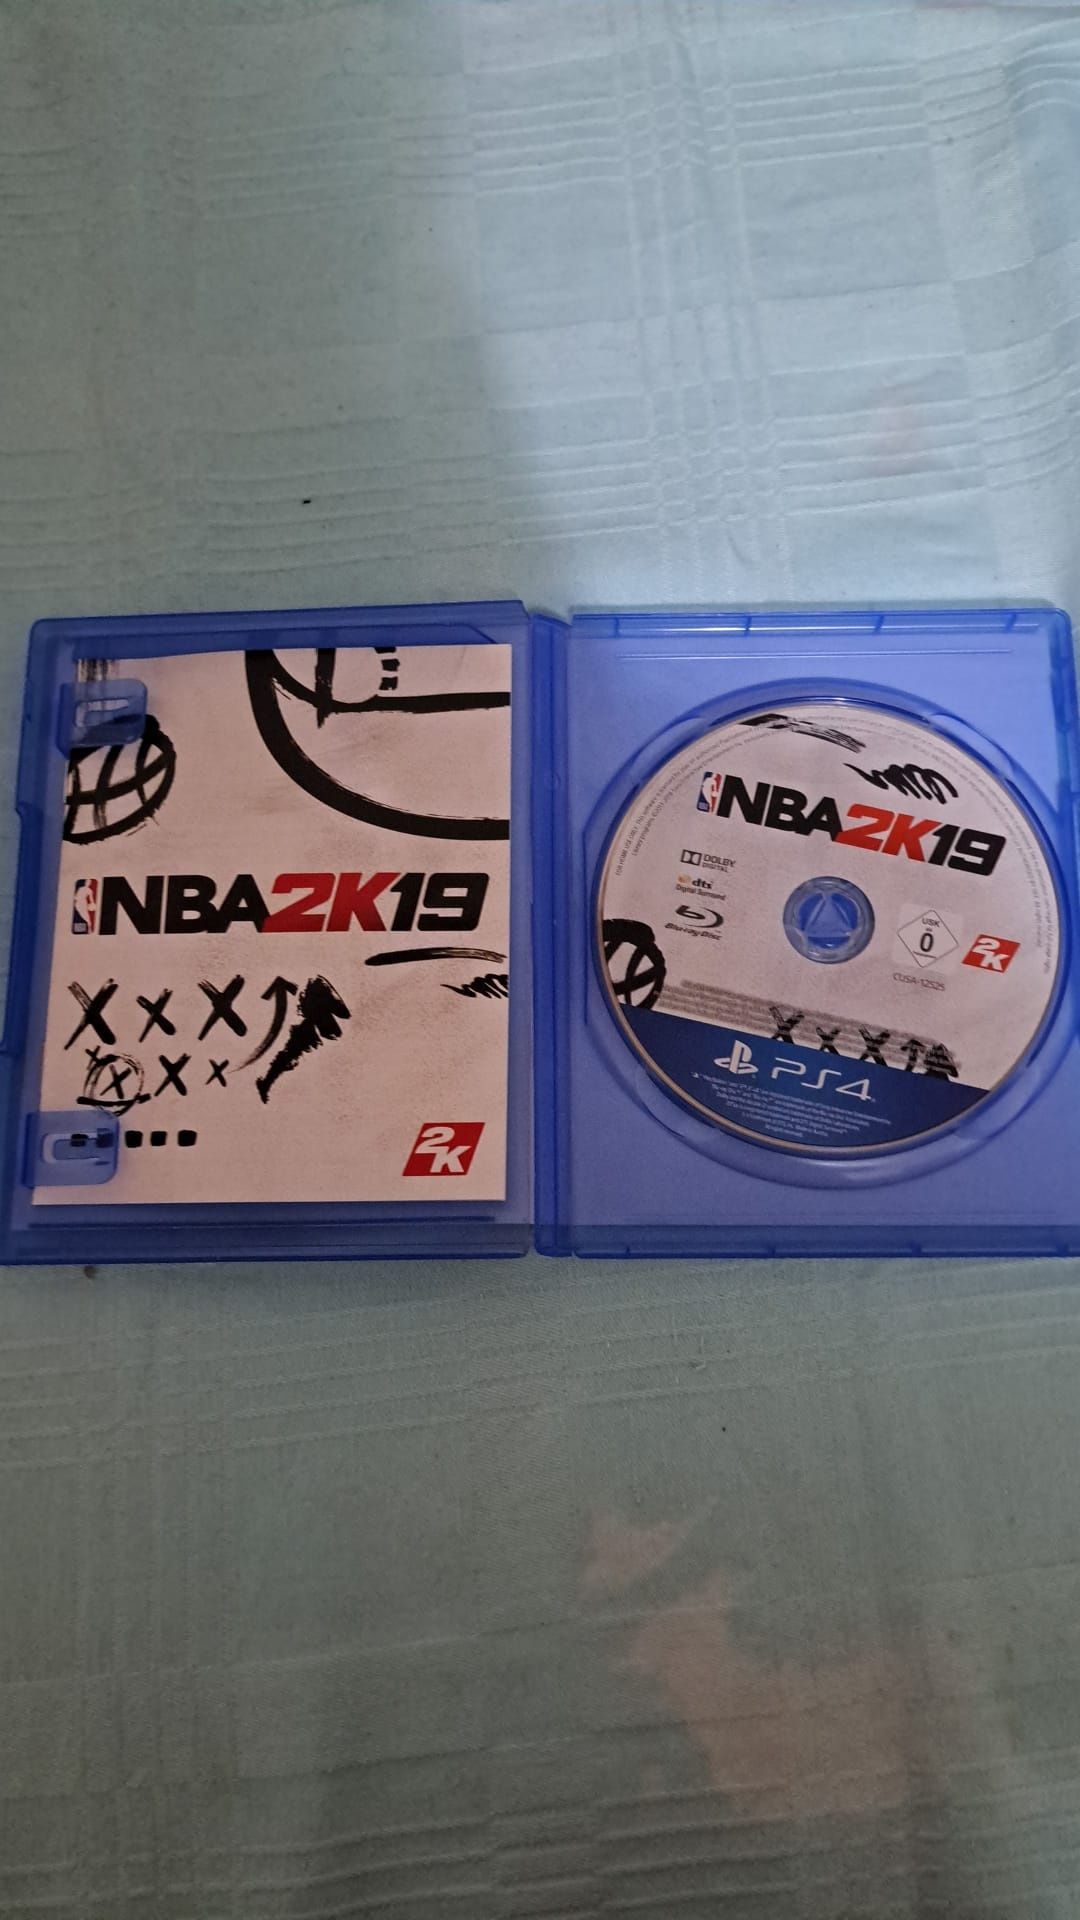 Vand Joc pentru PS4 NBA 2K19
Vand Joc pentru PlayStation 4 NBA 2K19